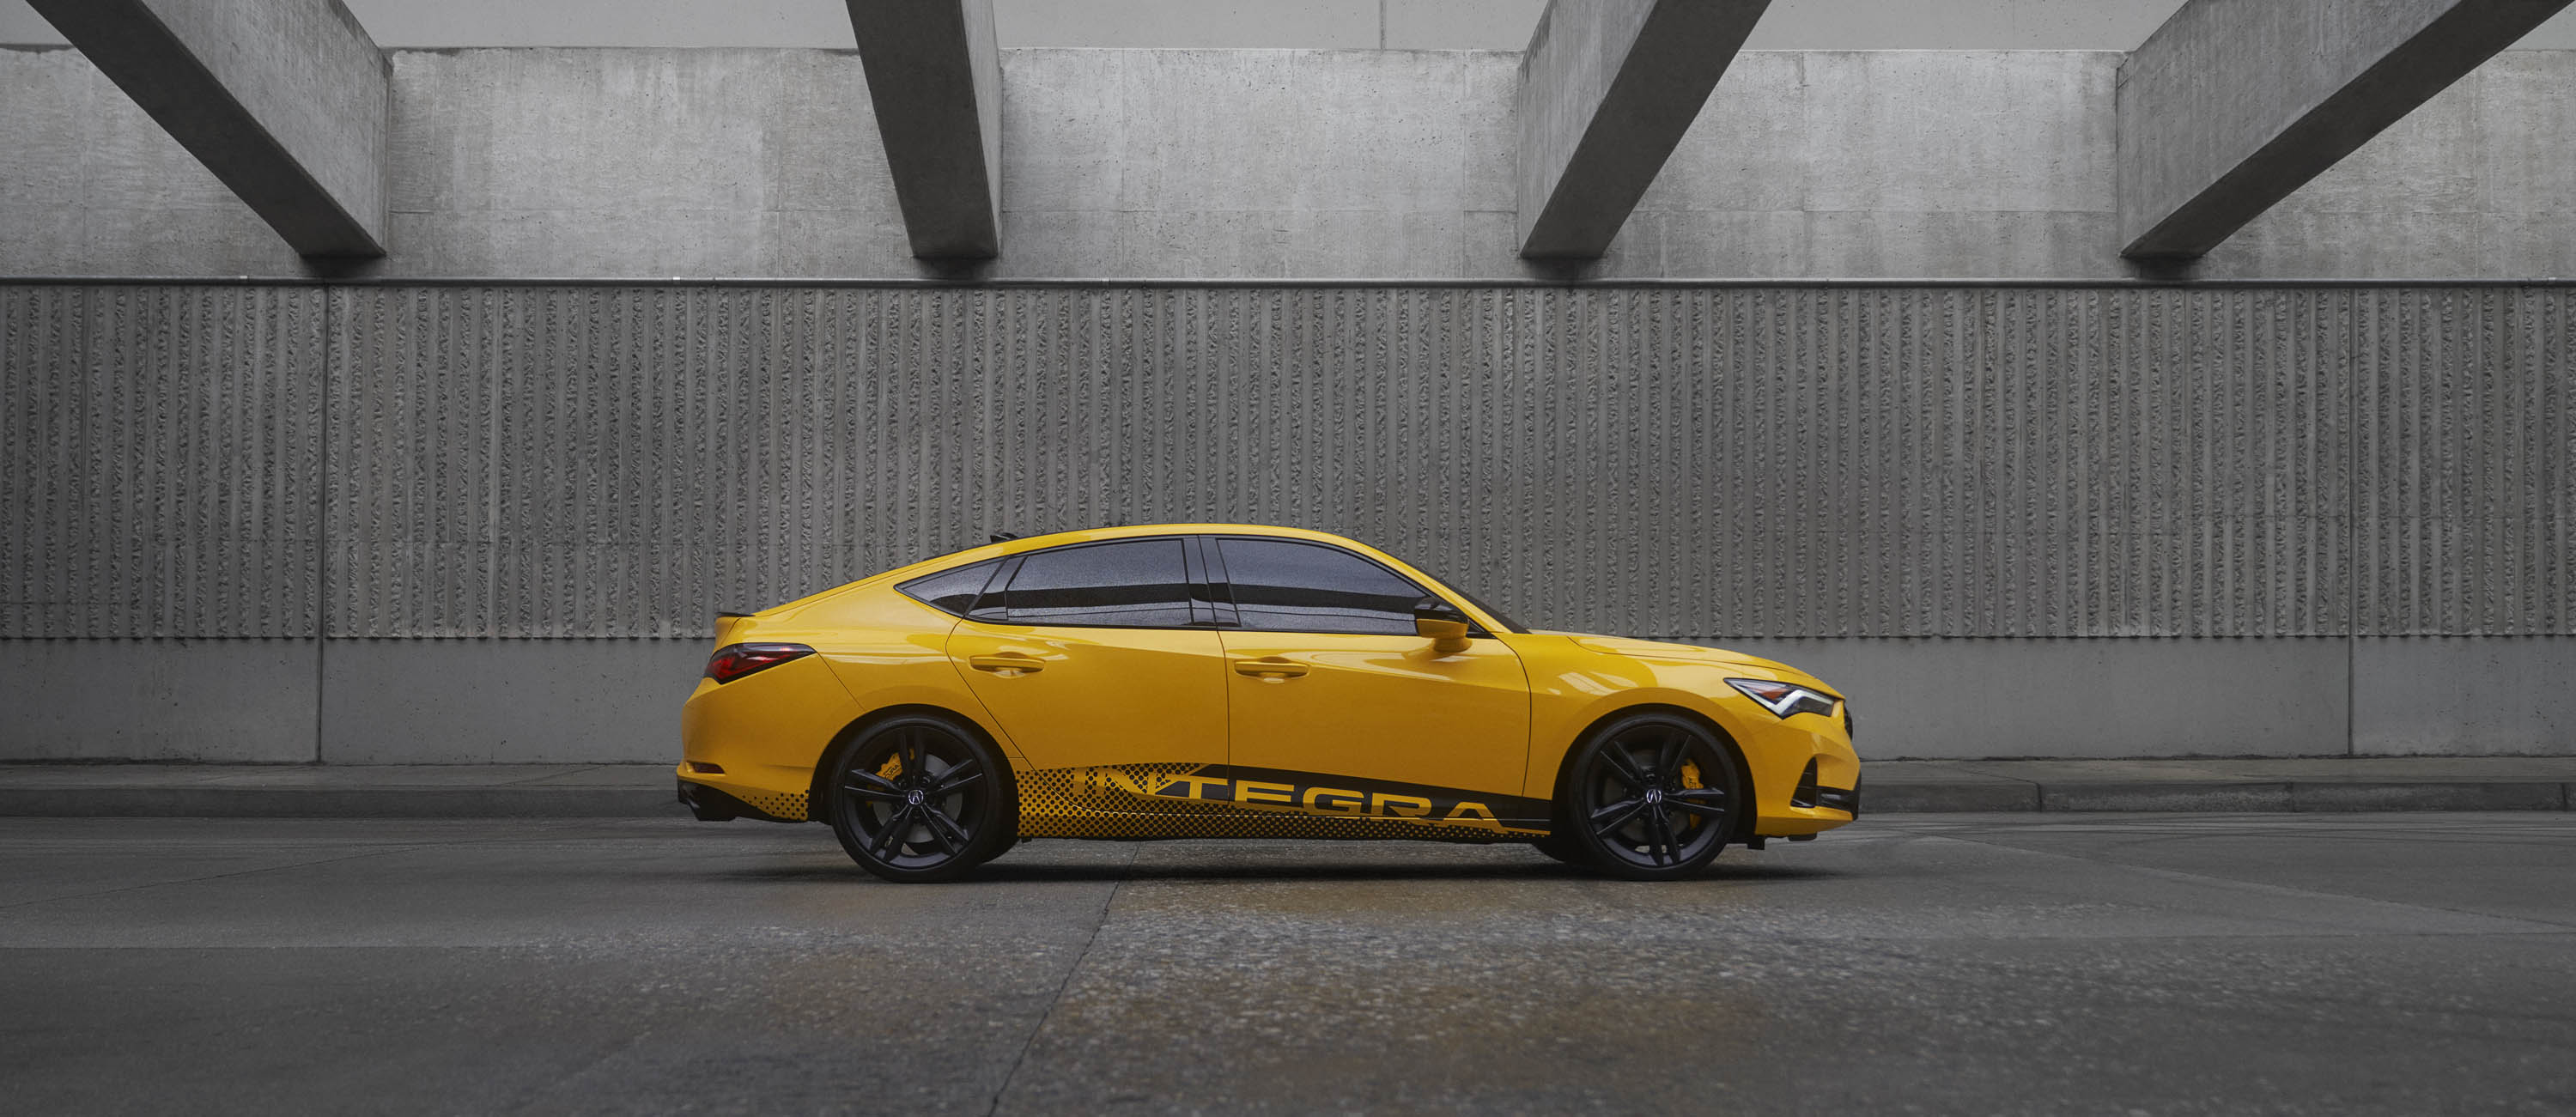 Сегодня Acura впервые представила миру долгожданную новую Integra, ознаменовав возвращение знаменитой таблички с именем в модельный ряд Acura.